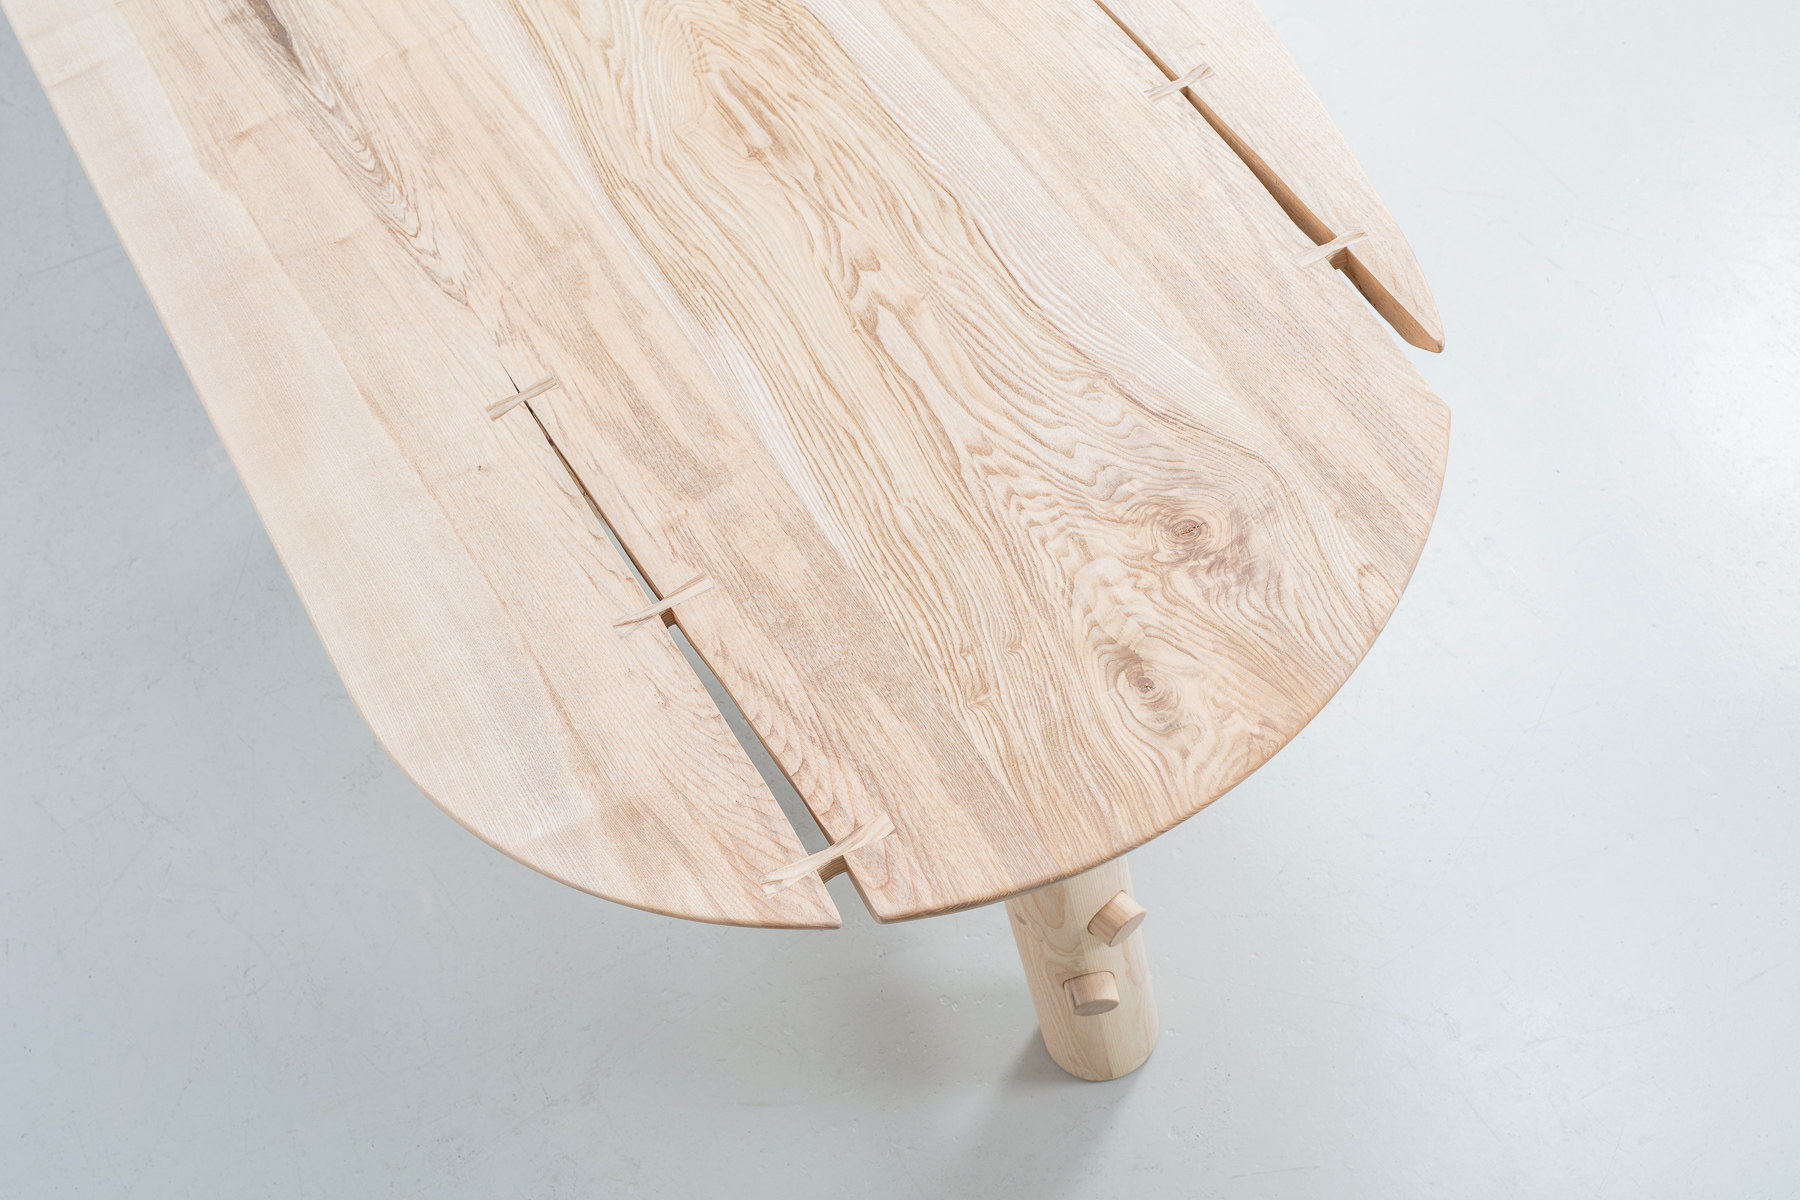 Jan Hendzel Studio Caravan vardo table for duke of York square restaurant by next architects